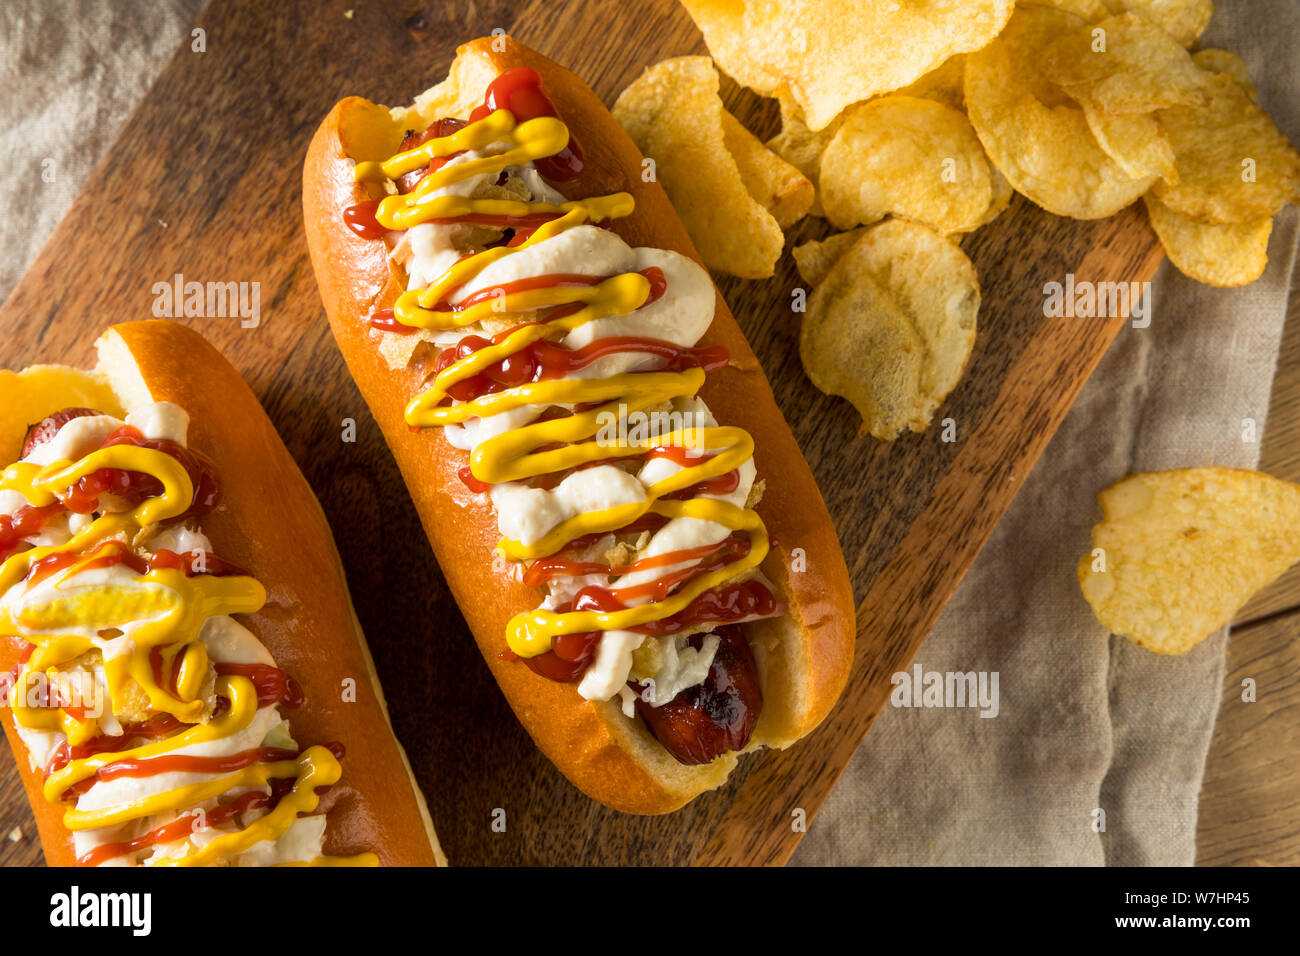 https://c8.alamy.com/compes/w7hp45/los-perros-calientes-colombianas-caseras-con-patatas-fritas-mayonesa-de-mostaza-y-ketchup-w7hp45.jpg